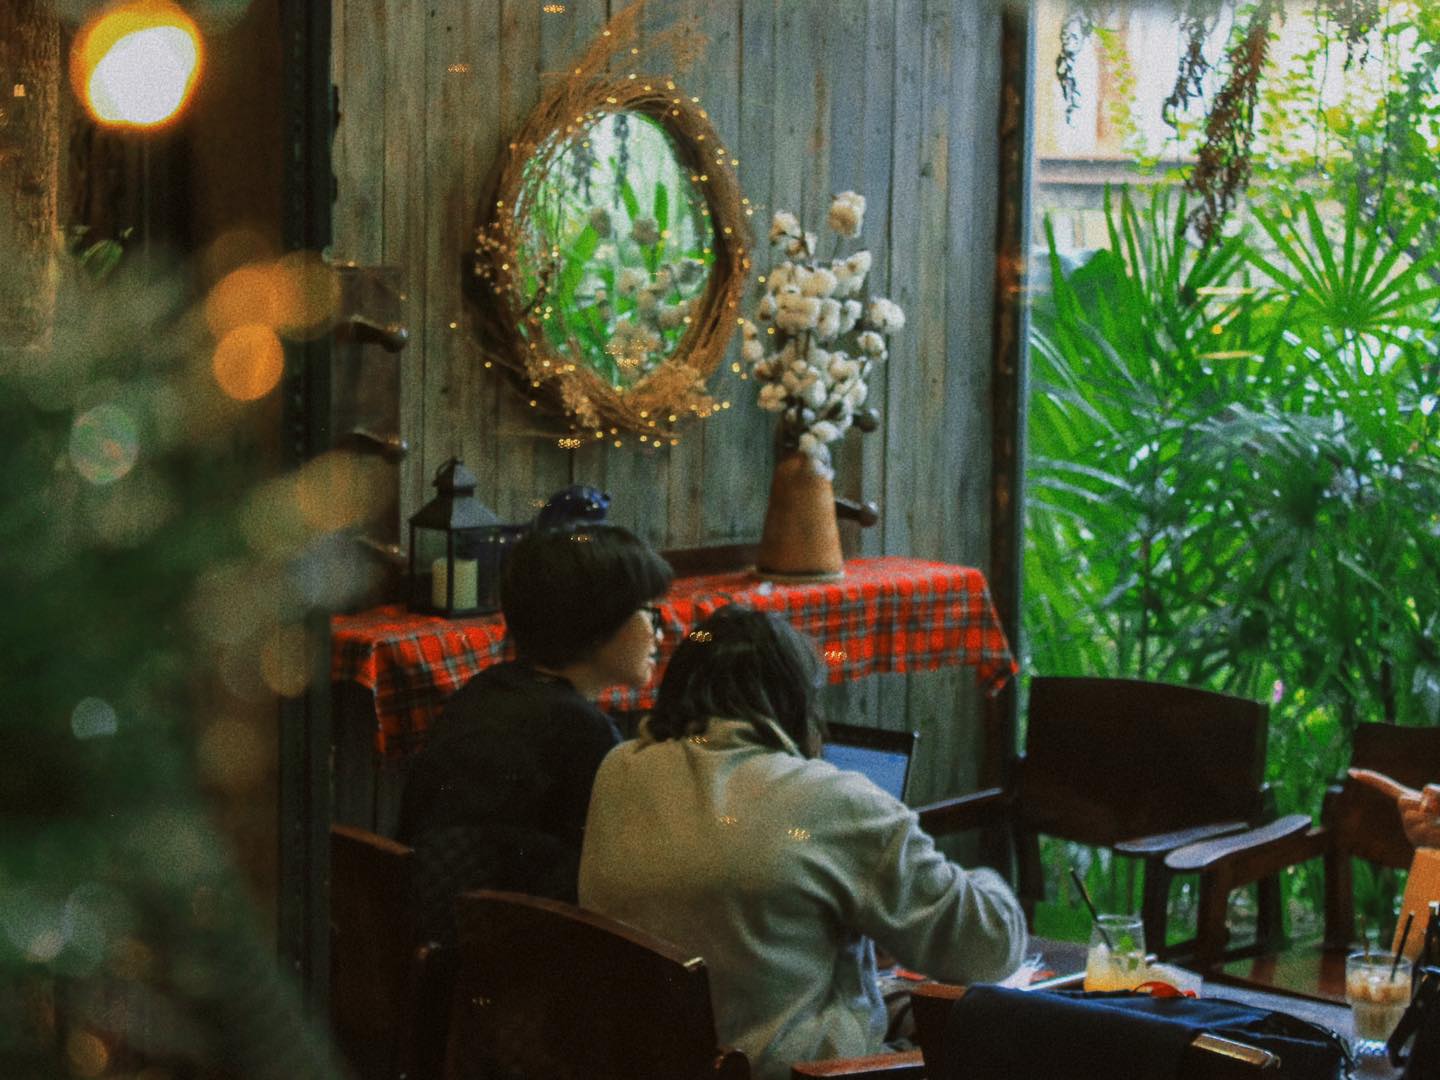 Cú Trên Cây quán cà phê trang trí giáng sinh đẹp tại Sài Gòn